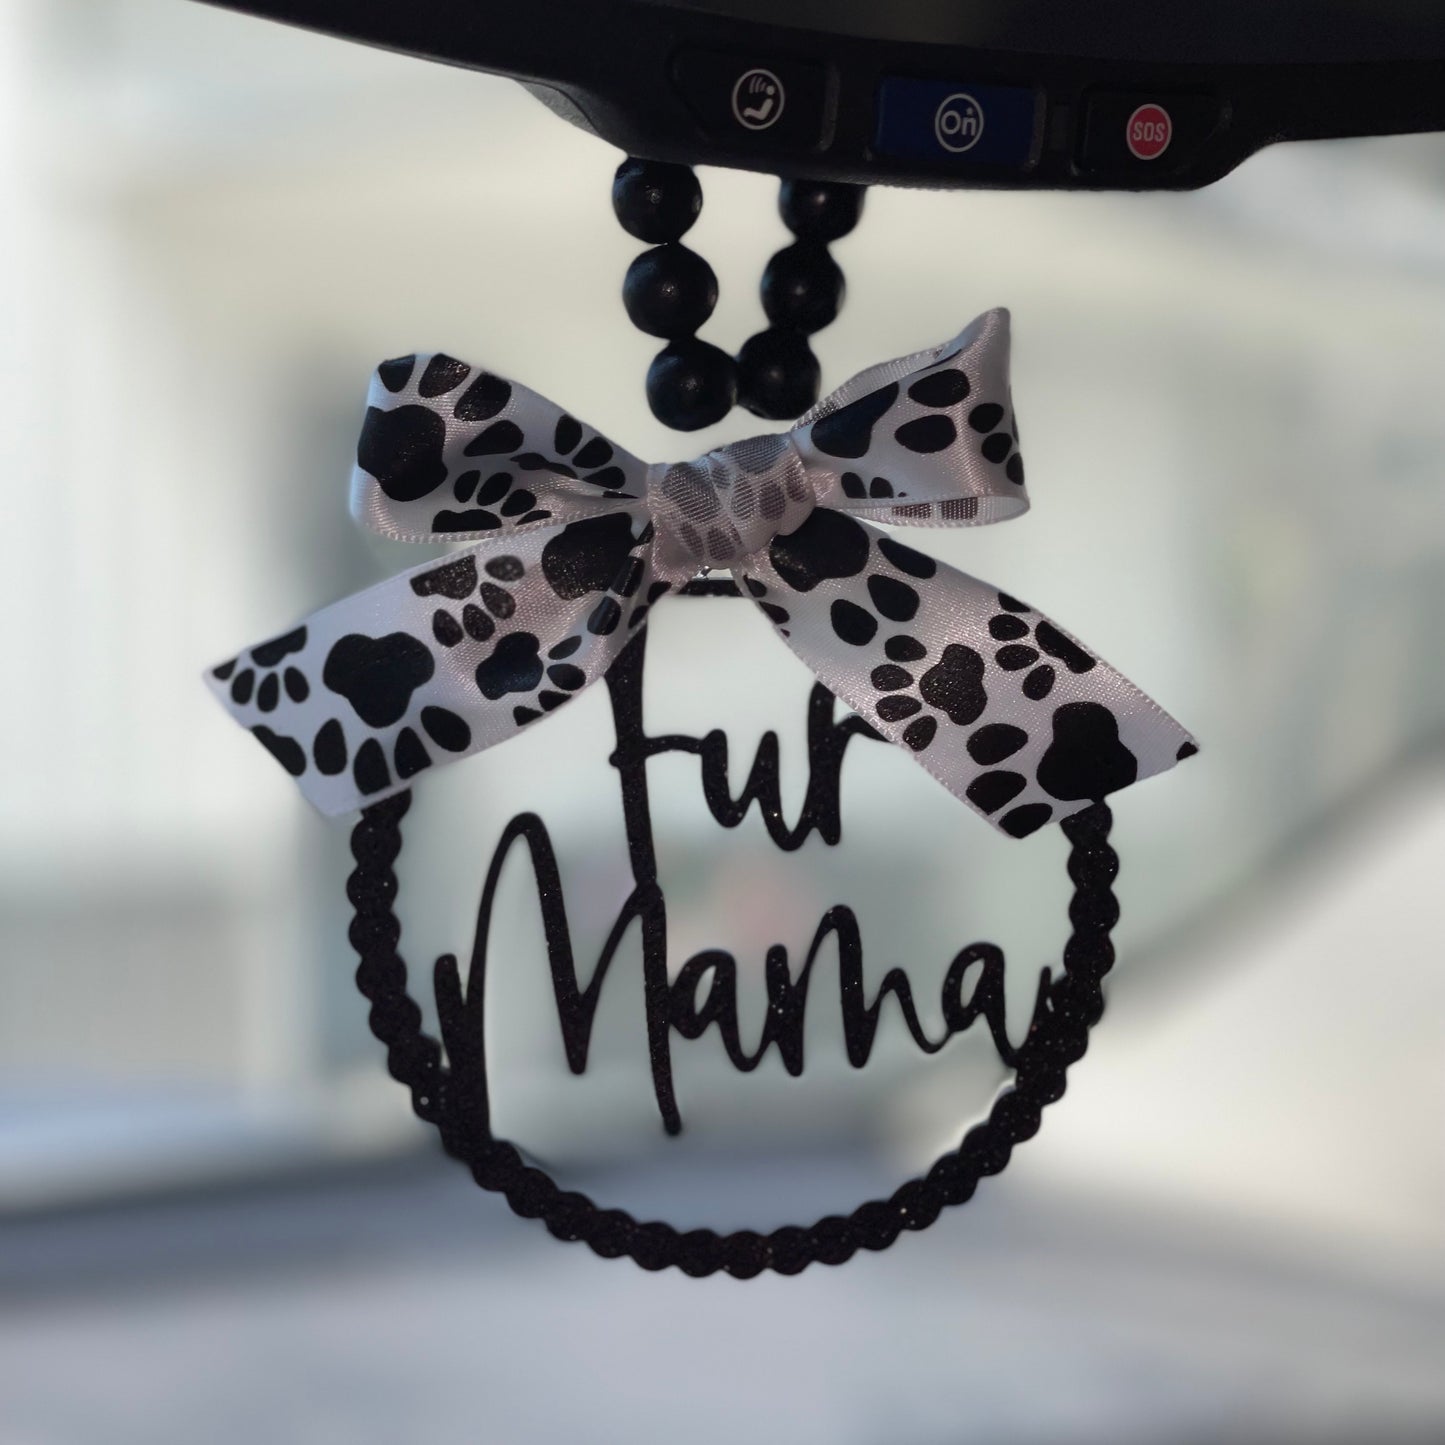 Fur Mama Mirror Charm | Car Charm | Rear View Mirror Charm | Cat Mom Gift | Dog Mom Gift | Car Charm